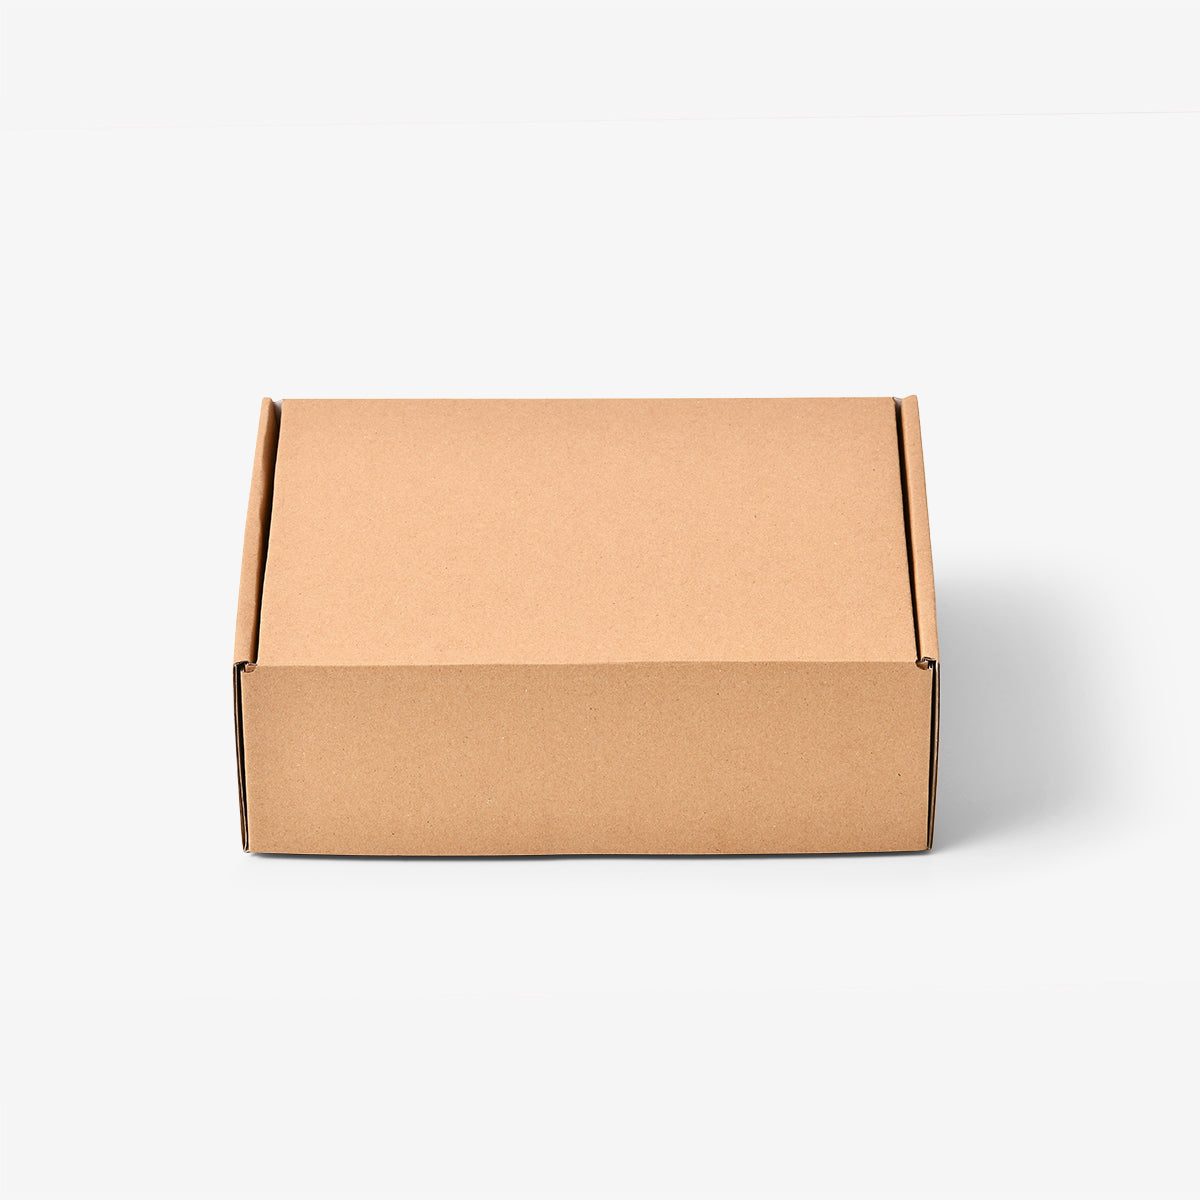 The Staple | Kraft Mailing Box (Pack of 25)